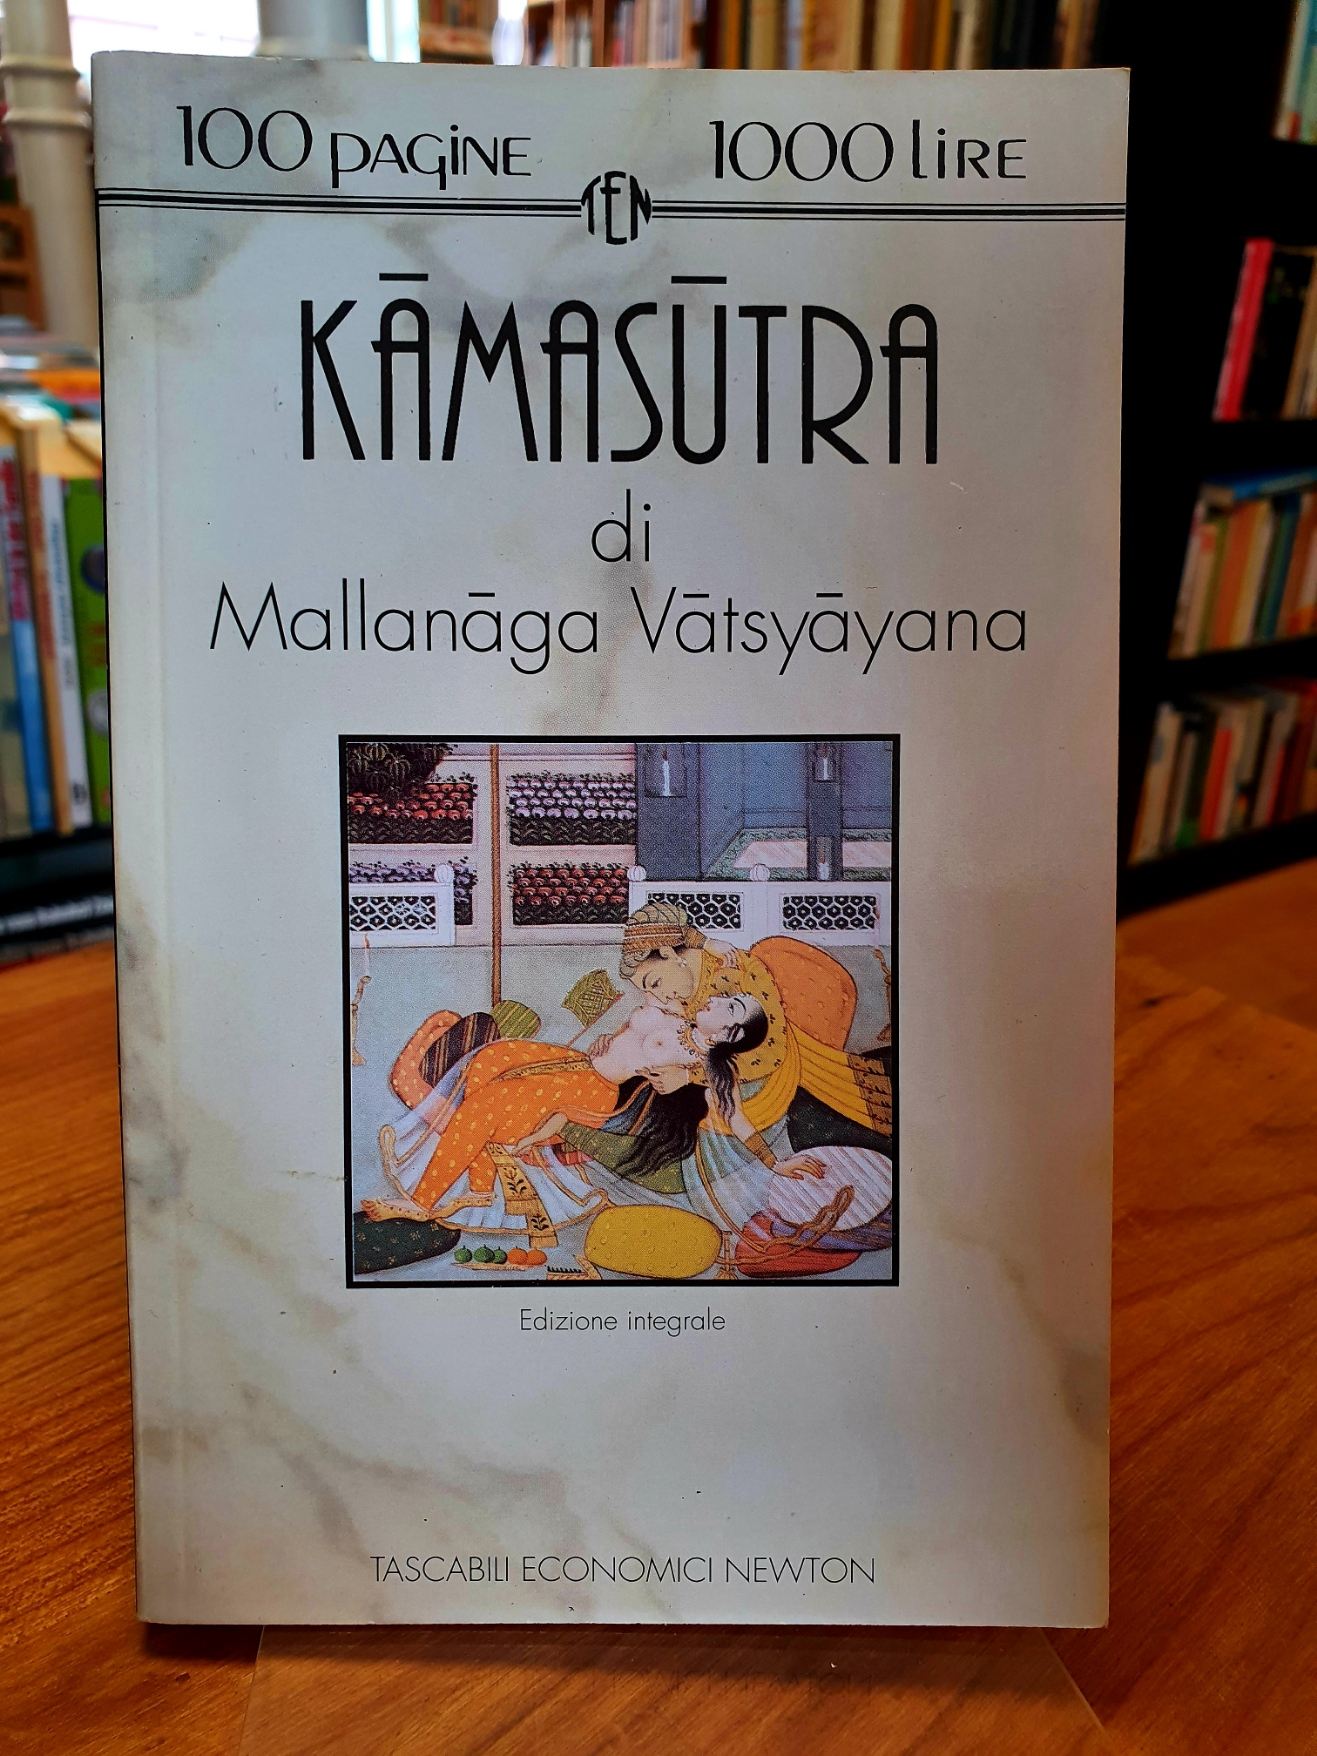 [Vatsyayana Mallanaga] / Paoili, Kamasutra,